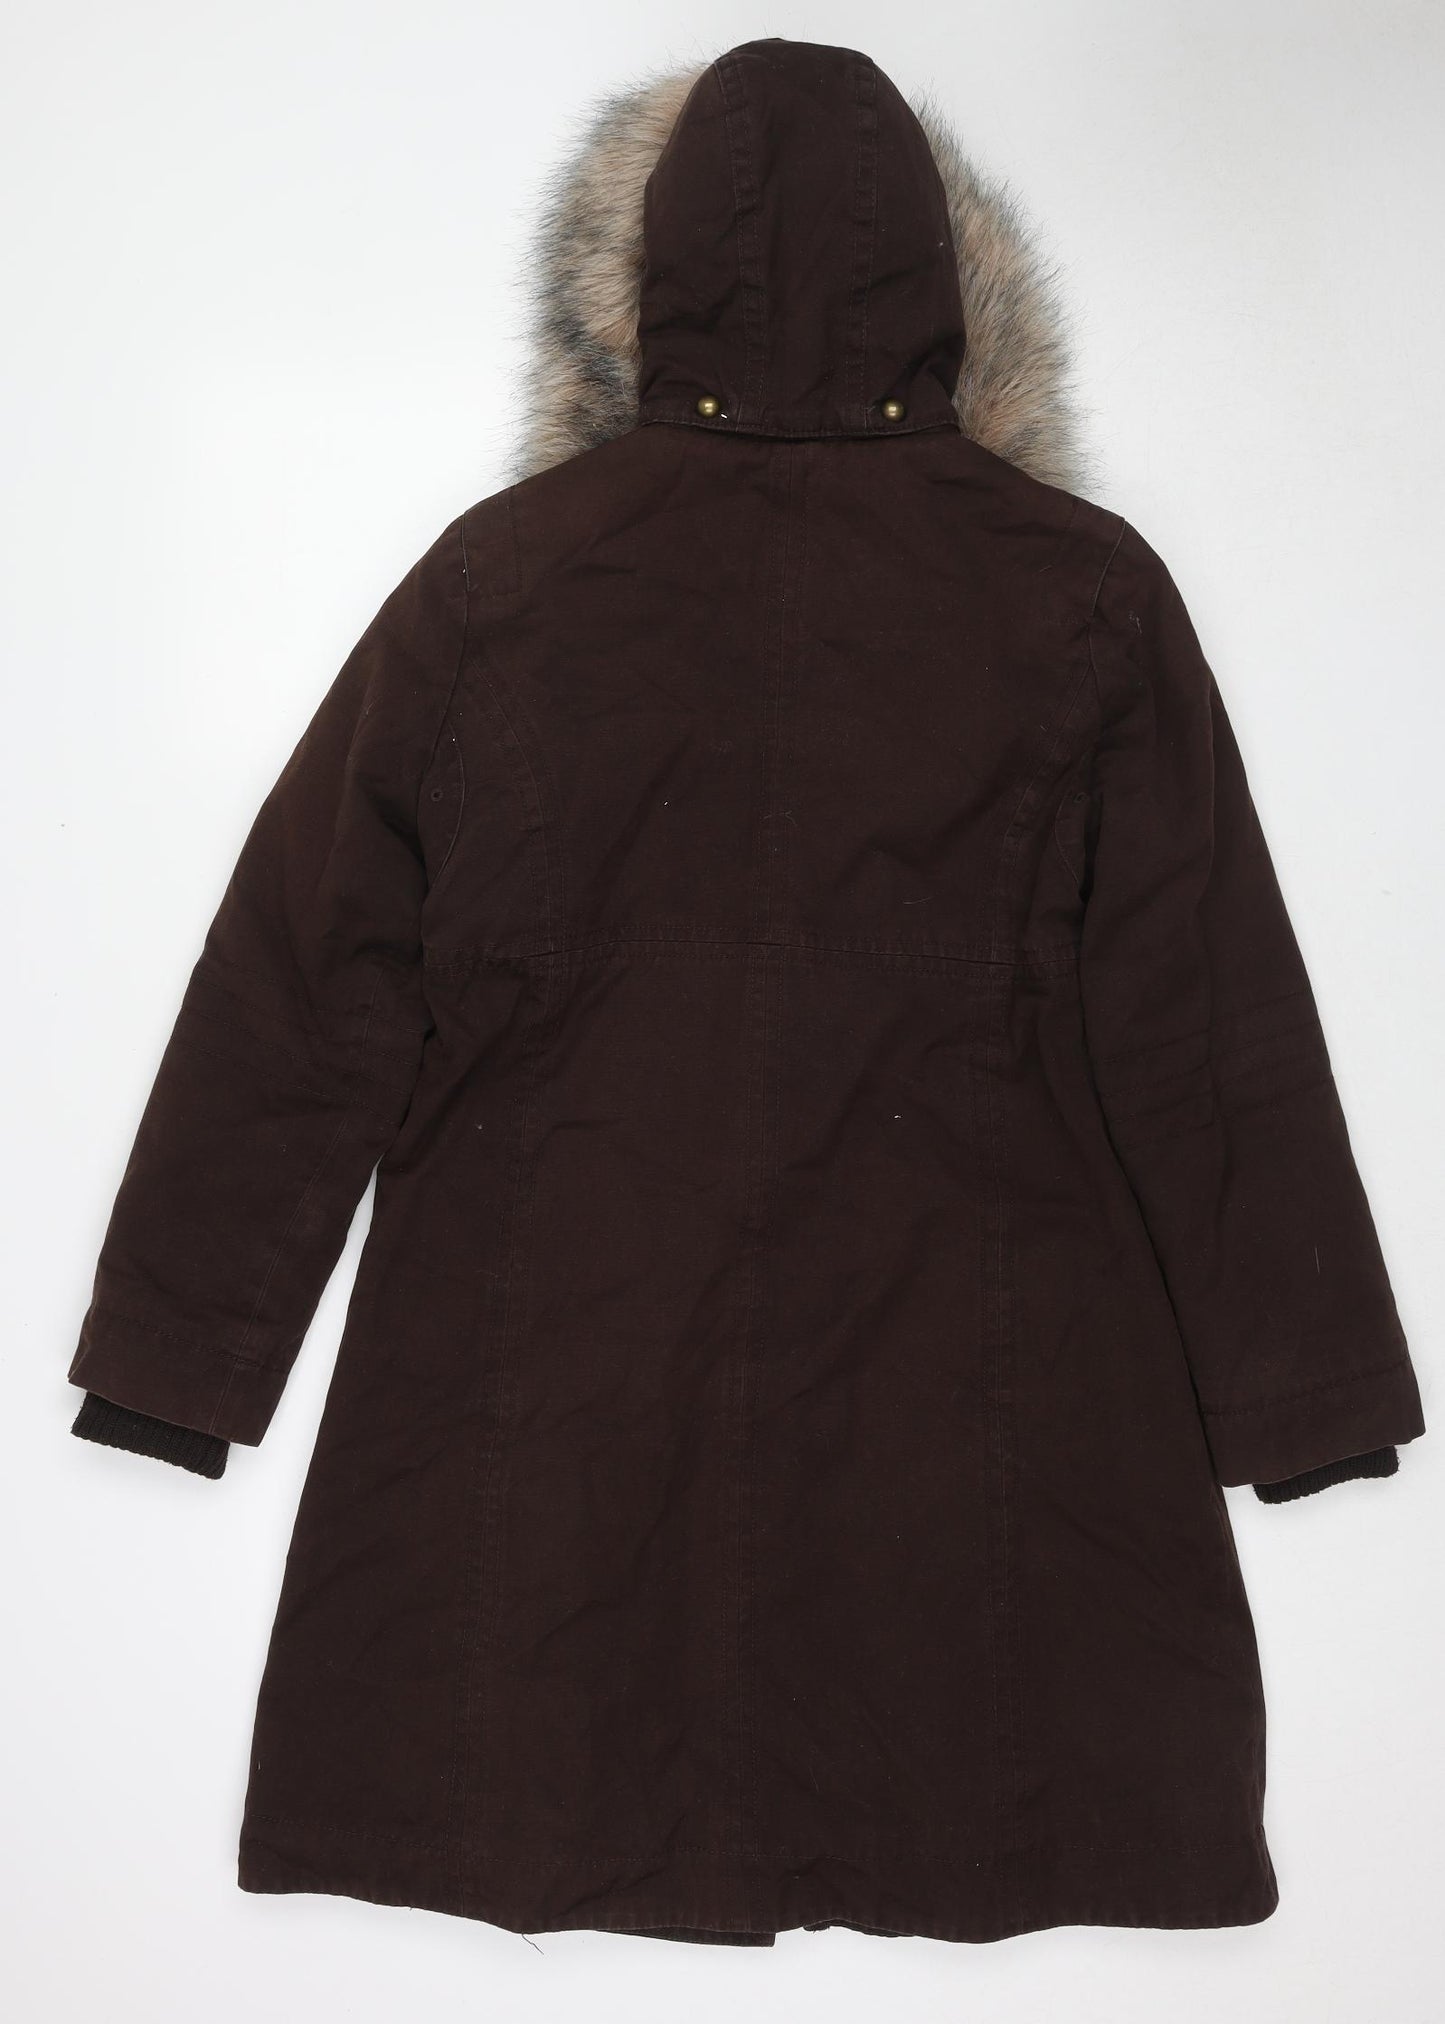 Col Claudine Womens Brown Overcoat Coat Size 12 Zip